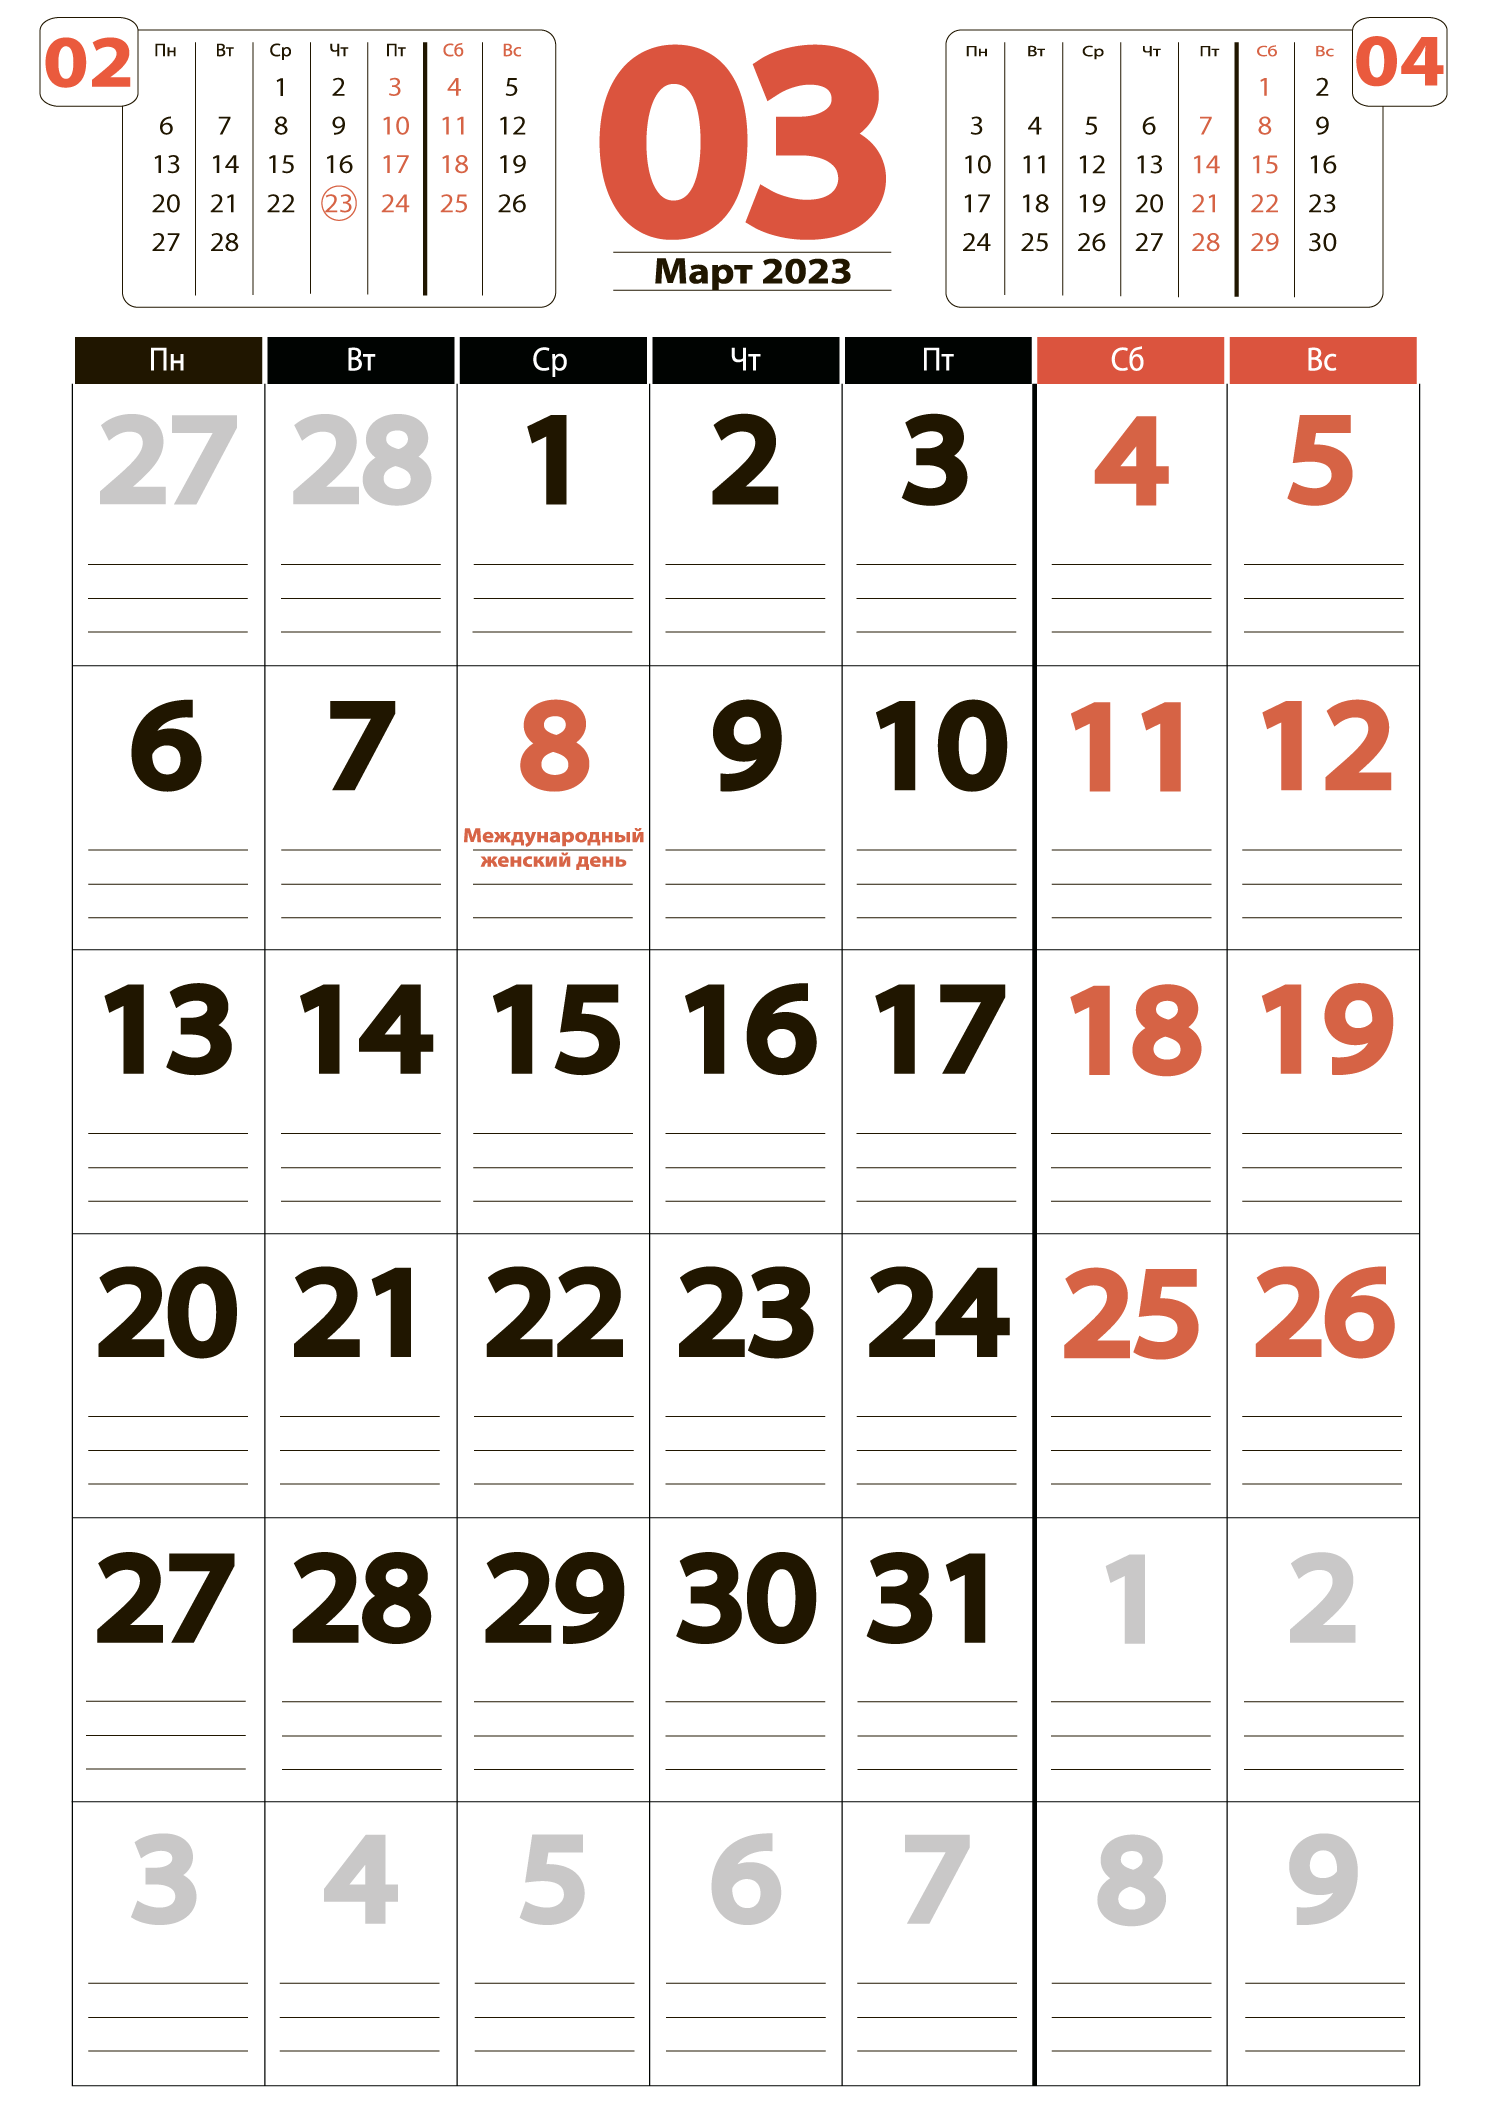 Печать крупного календаря на март 2023